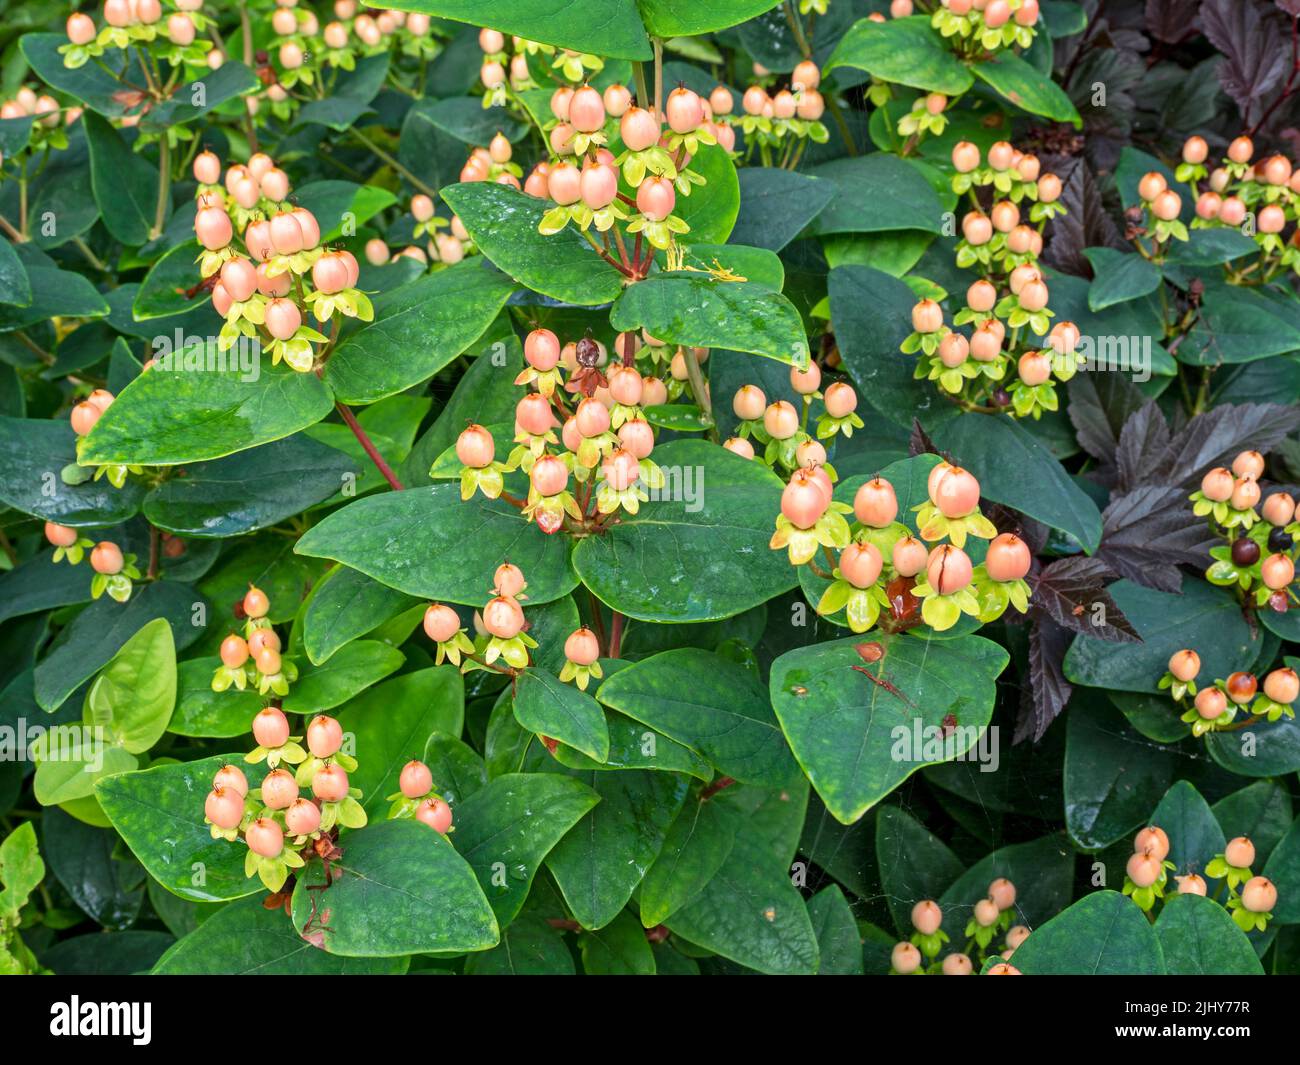 Pianta di Tutsan con bacche e foglie verdi Foto Stock